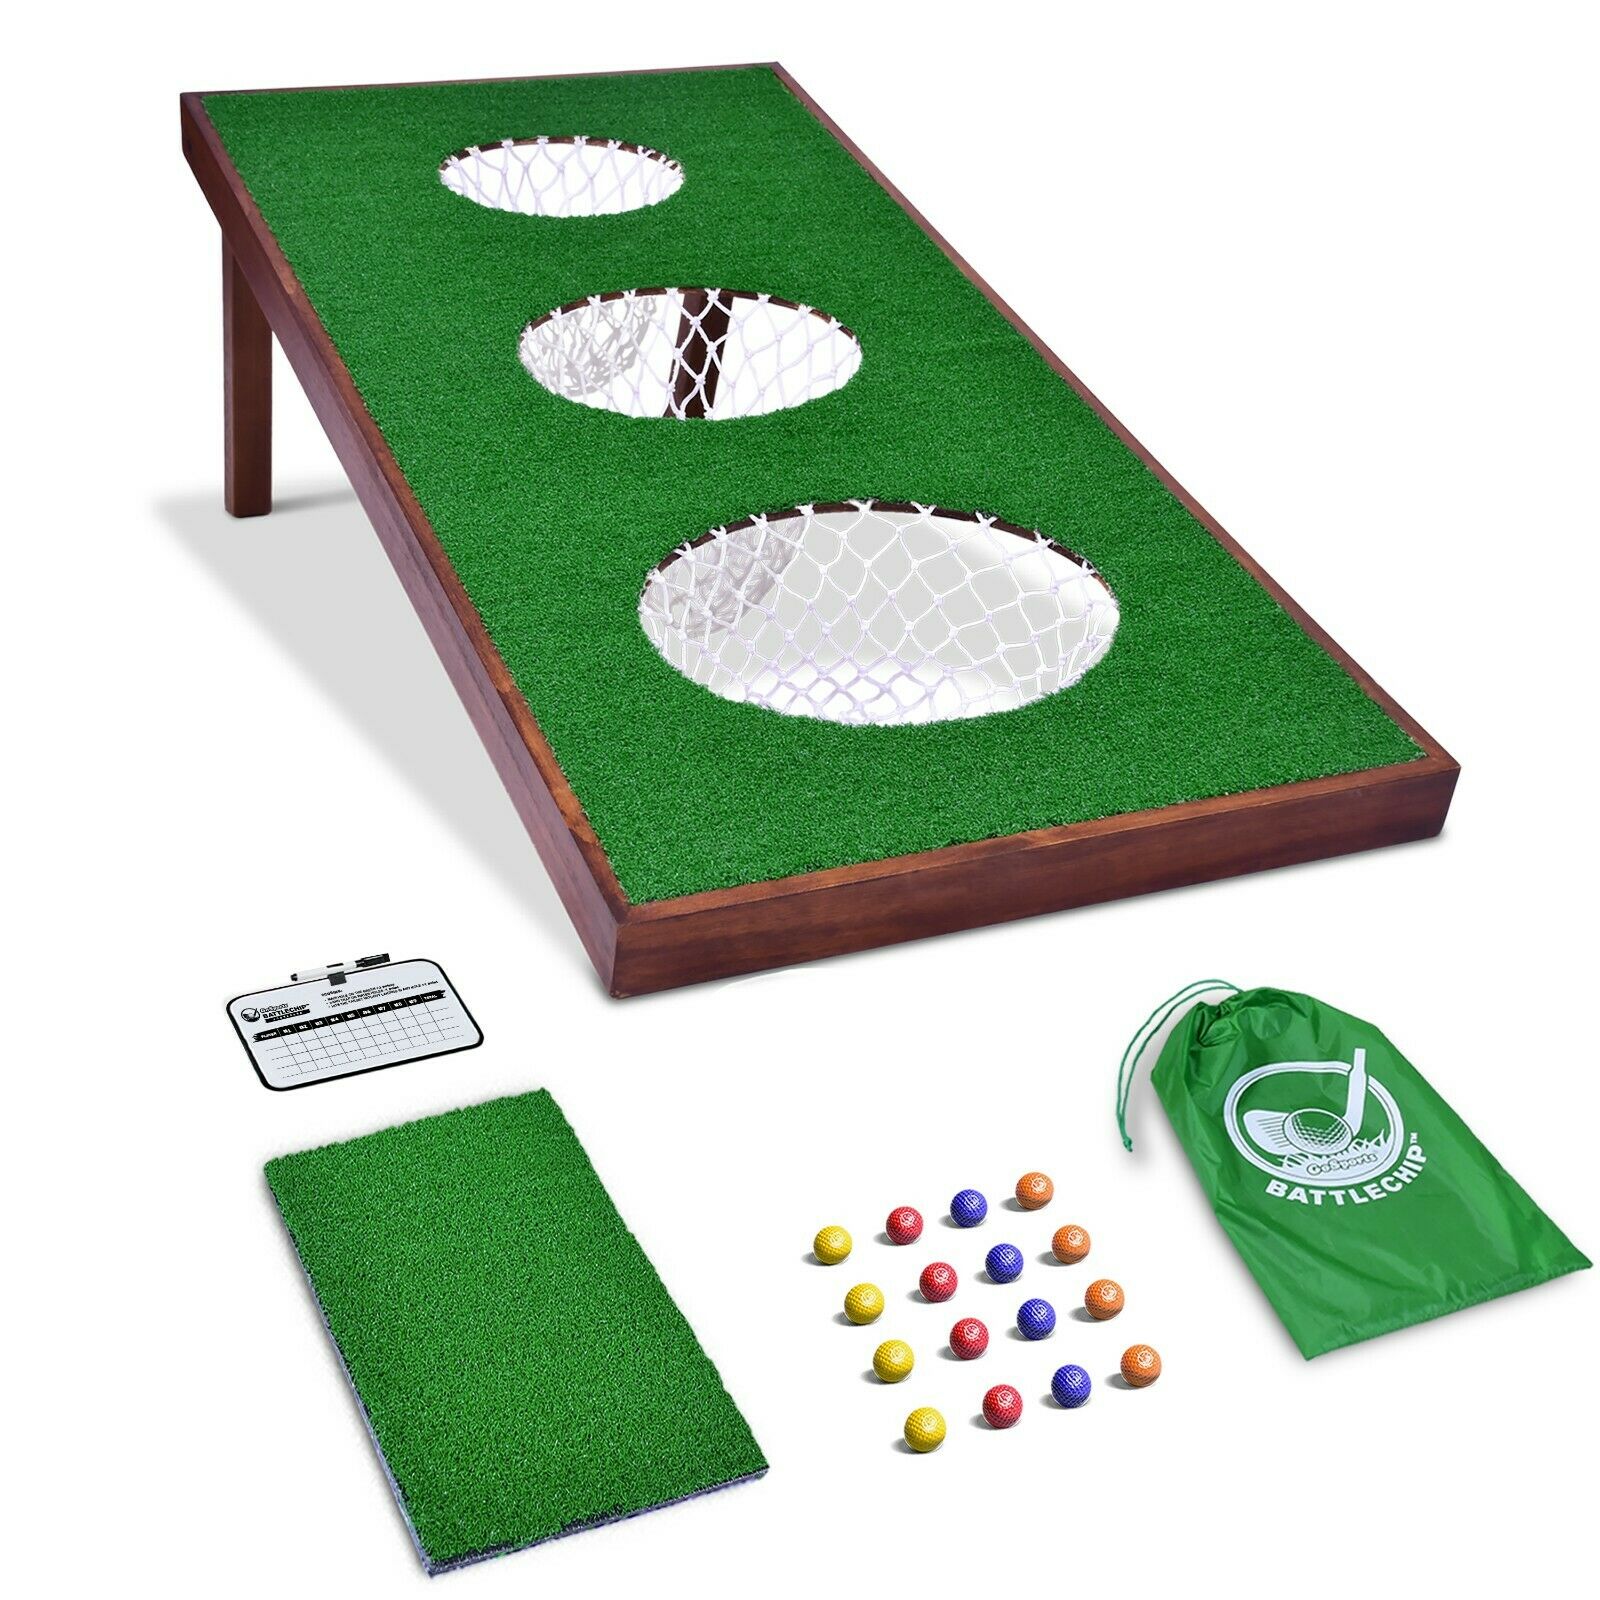 GoSports BattleChip PRO Outdoor Golf Game | Includes Target, 16 Foam Balls, Mat - The Golfing Eagles